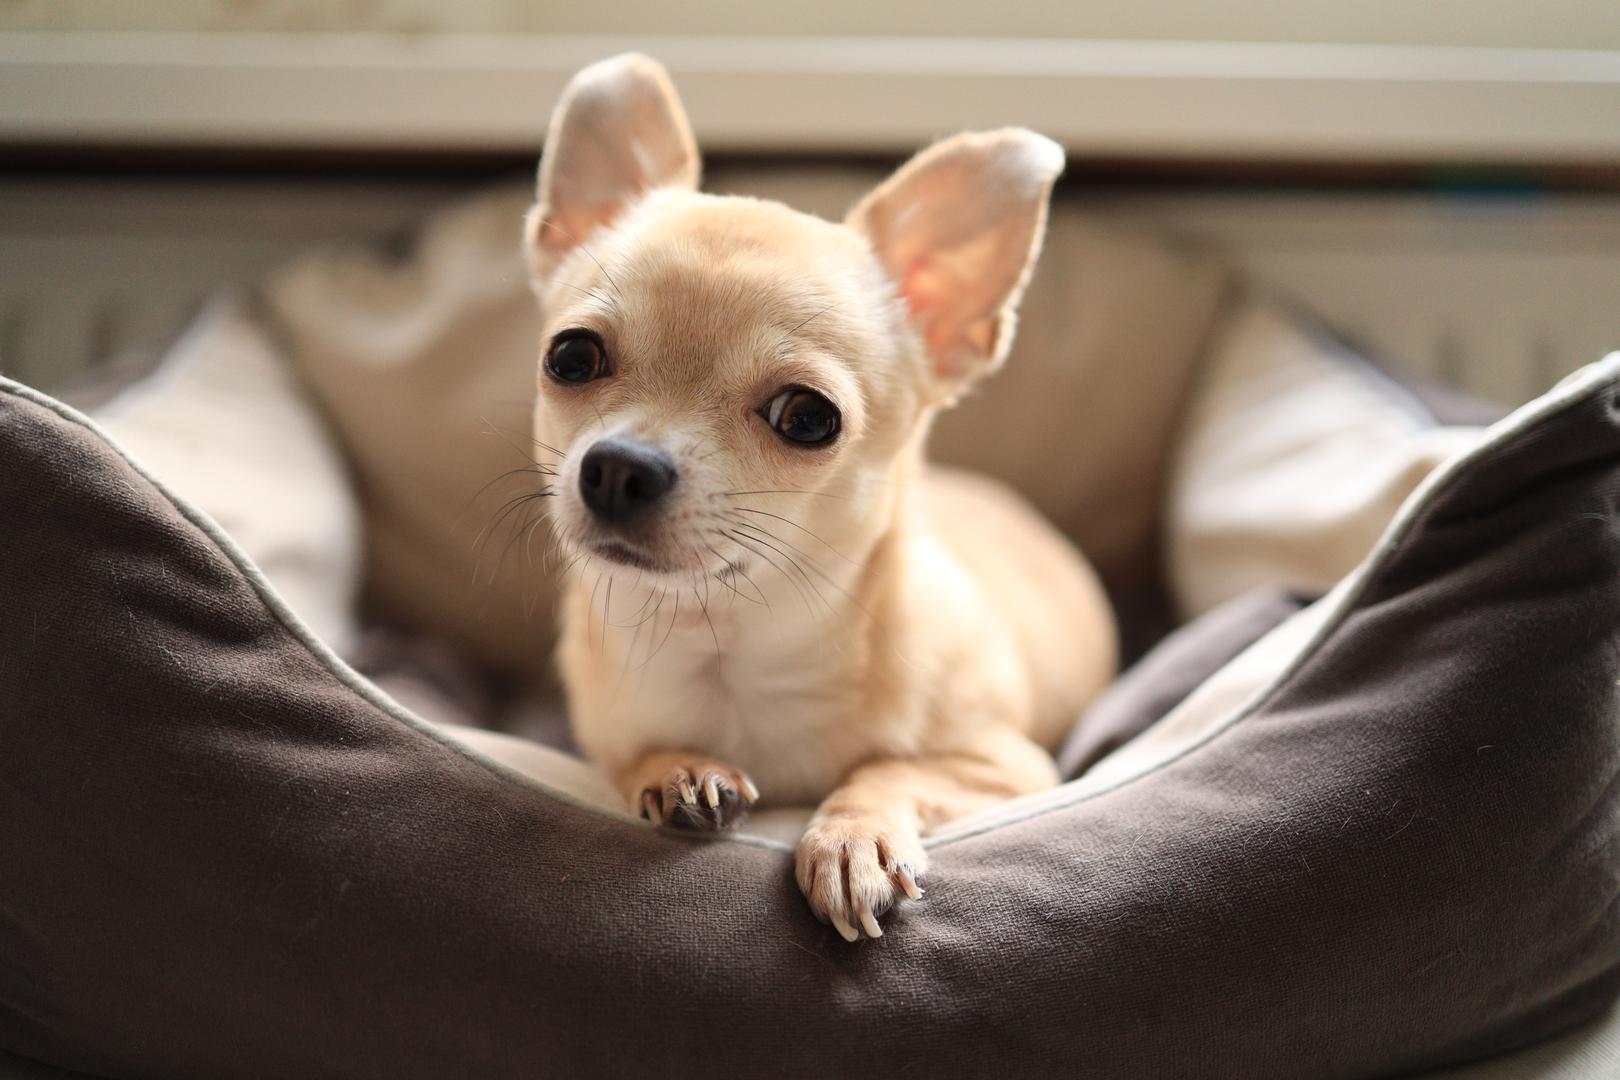 1. Čivava: Chihuahua je mala, ali moćna, s očekivanim životnim vijekom od 14 do 16 godina. 'Unatoč tome što su tako mali, obično su vrlo zdravi i nisu osobito skloni razvoju raka', objašnjava Ray Spragley, osnivač i veterinar u Zen Dog Veterinary Care. Iako mogu dobiti kronične bolesti kao što su bolesti zuba, bolesti srca i medijalna luksacija patele, sva tri problema mogu se riješiti liječenjem i ranim otkrivanjem. Veterinarka Jennifer Sperry, dodaje da je vjerojatnije da će čivave voditi manje rizičan način života: 'Često su gotovo isključivo u kući, gdje su izložene manjem riziku od nezgoda i trauma u usporedbi s psima koji su vani'.